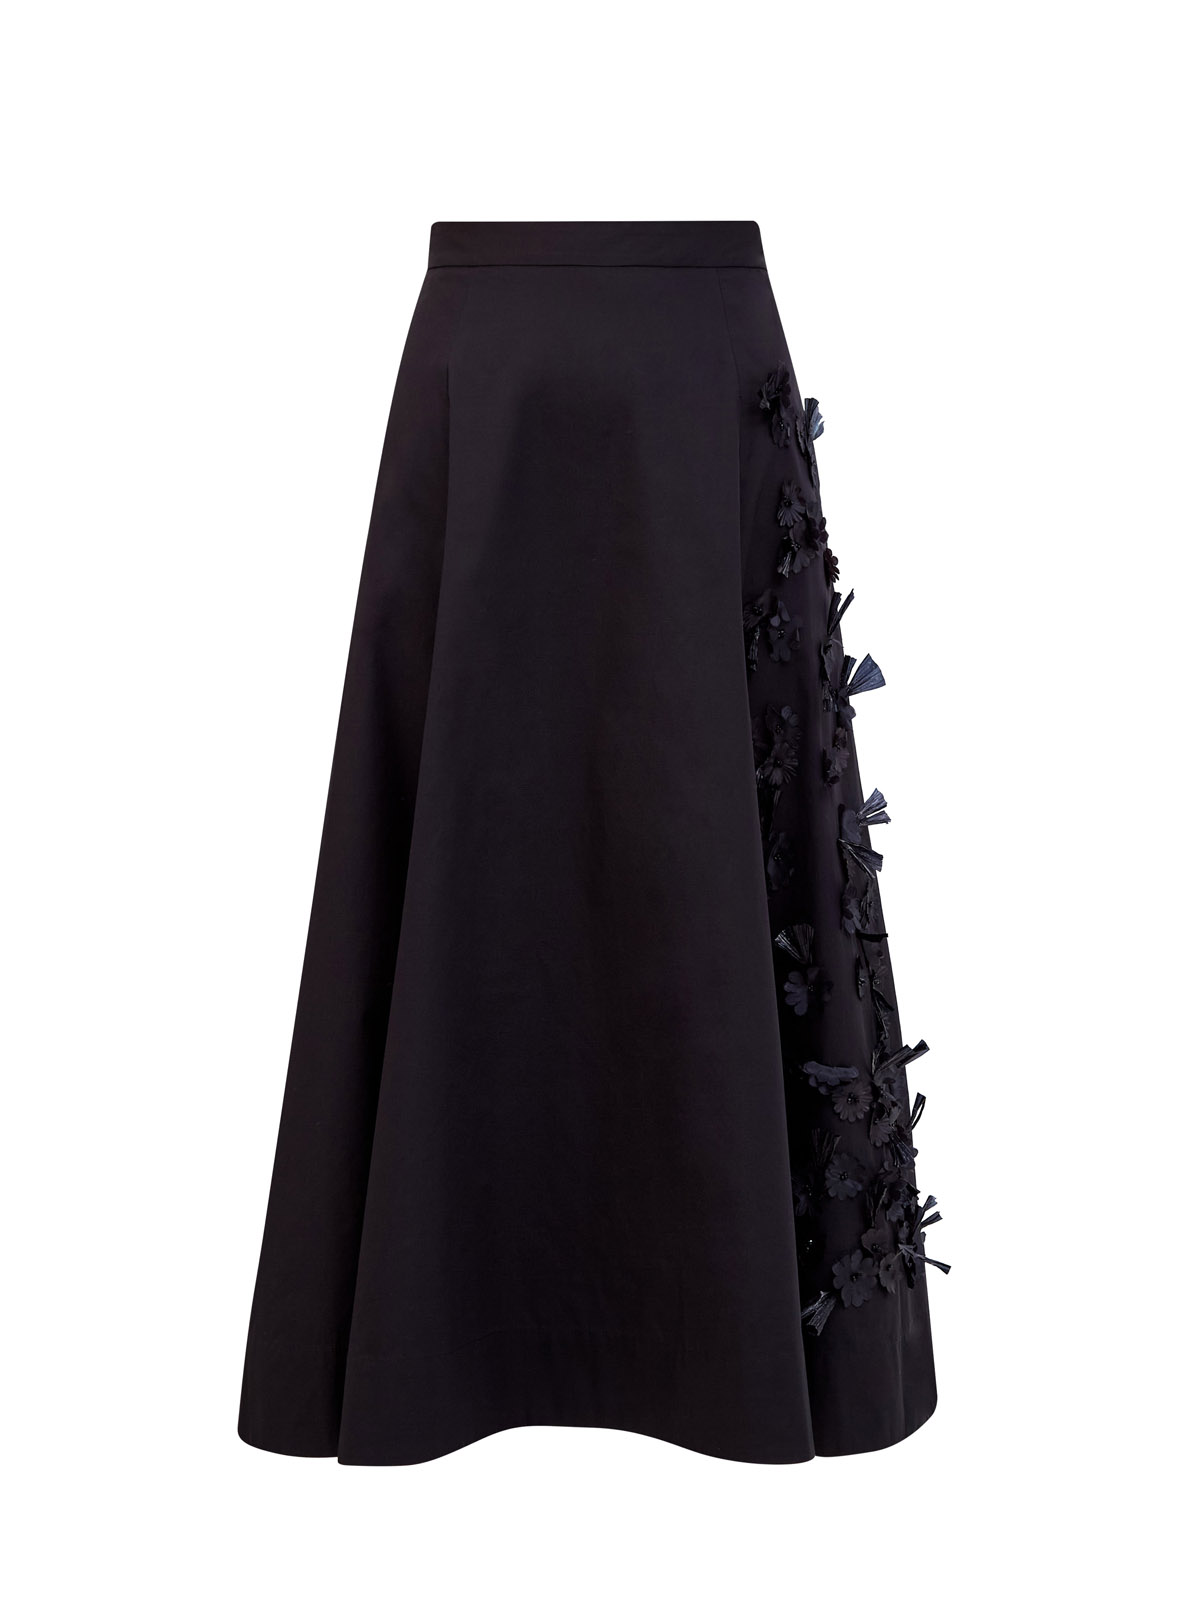 Расклешенная юбка-миди из хлопка с цветочной вышивкой в тон LORENA ANTONIAZZI, размер 42 - фото 1